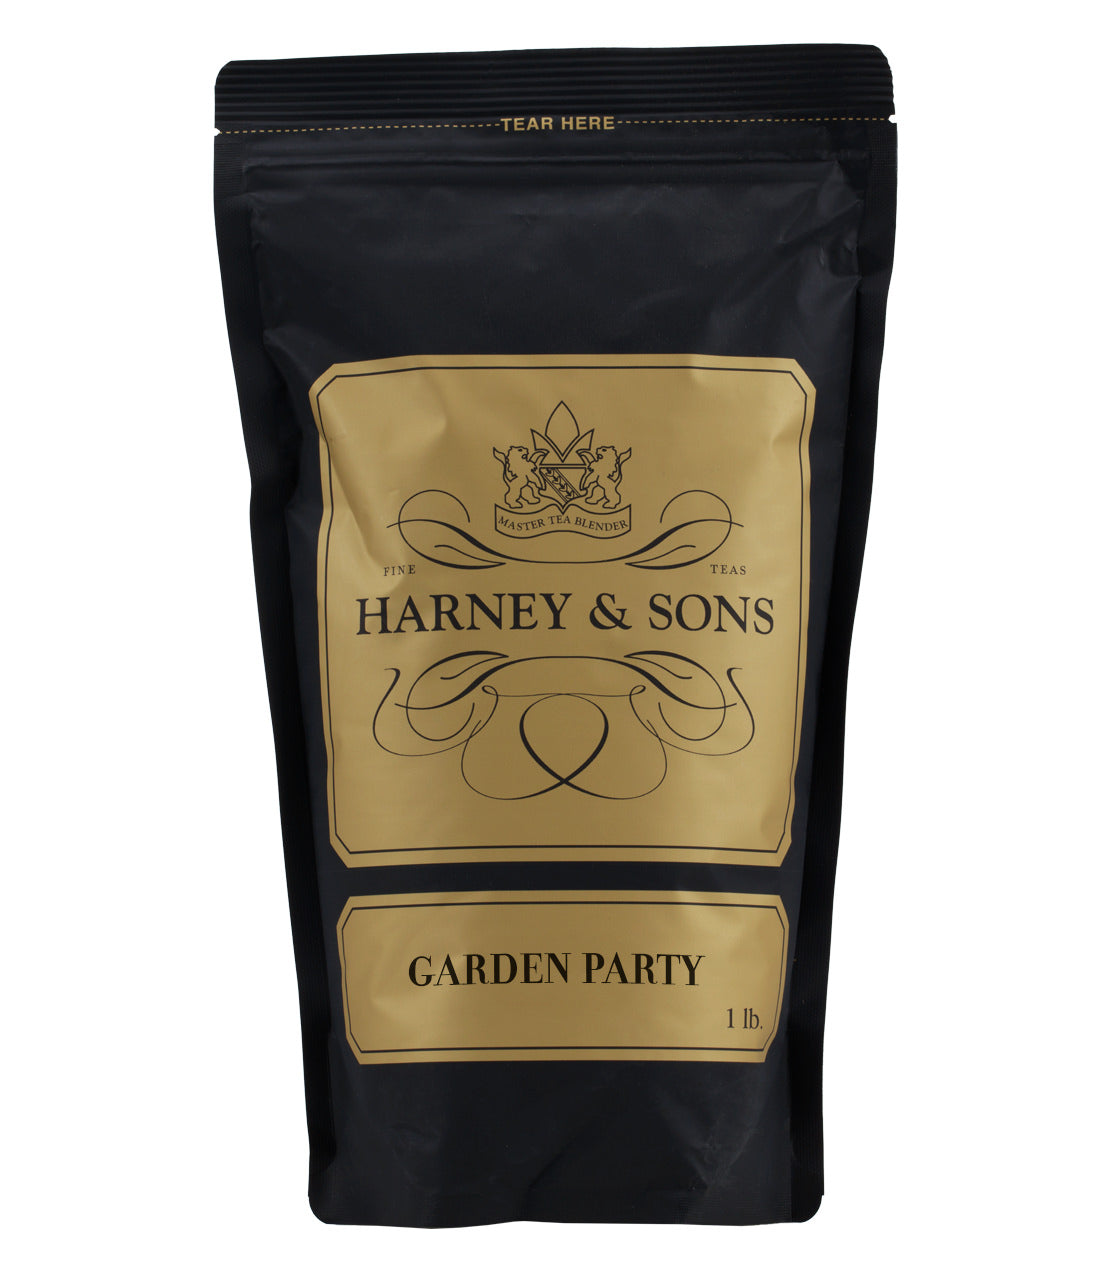 Garden Party - Loose 1 lb. Bag - Harney & Sons Fine Teas